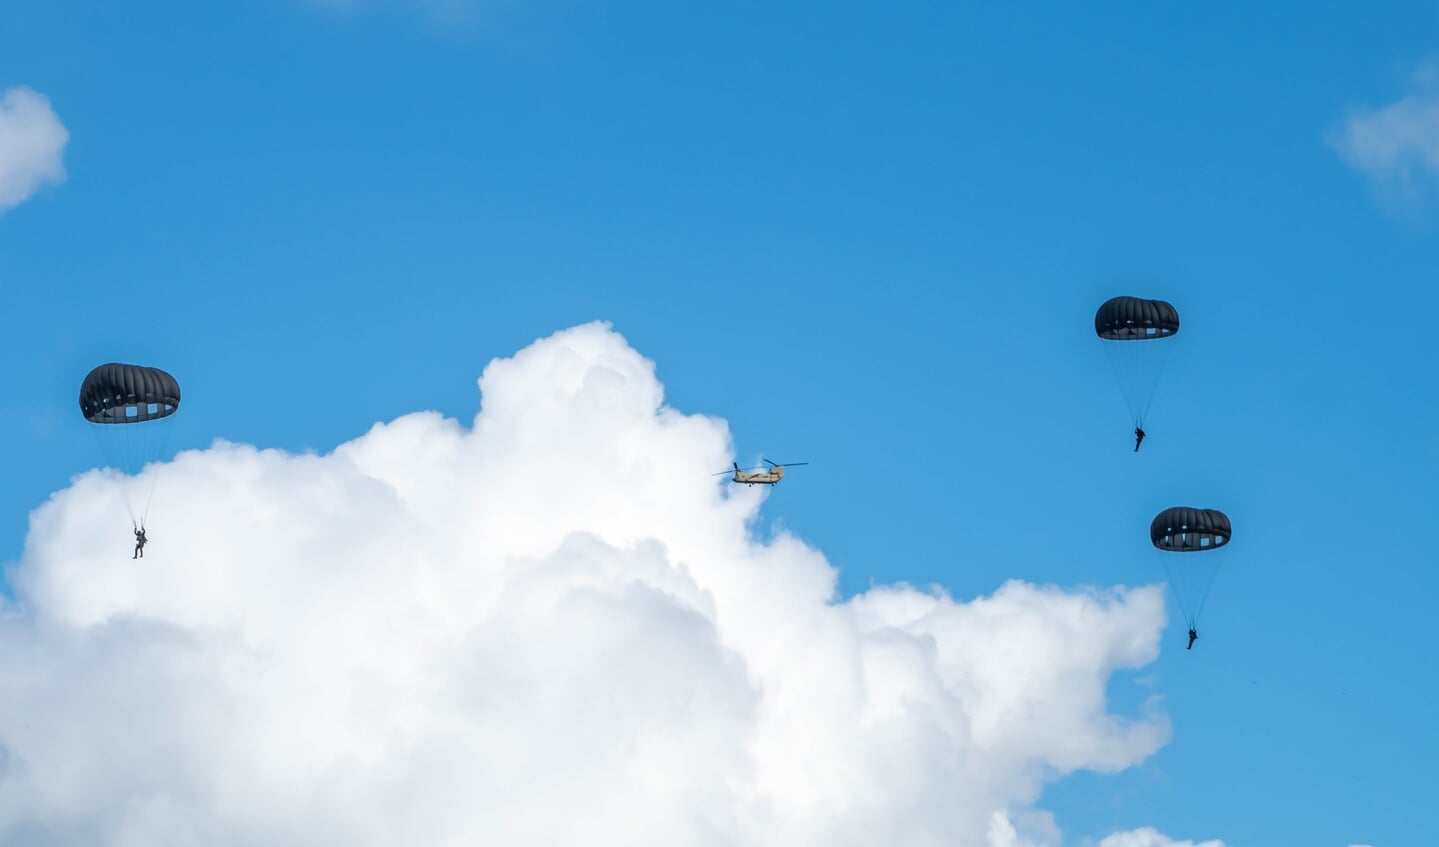 Dit jaar heeft een primeur, er wordt tijdens de oefening voor het eerst geoefend parachutisten die springen uit helikopters met een zogeheten 'static line'. Daarbij zit een lijn vast tussen de parachutist en de helikopter.